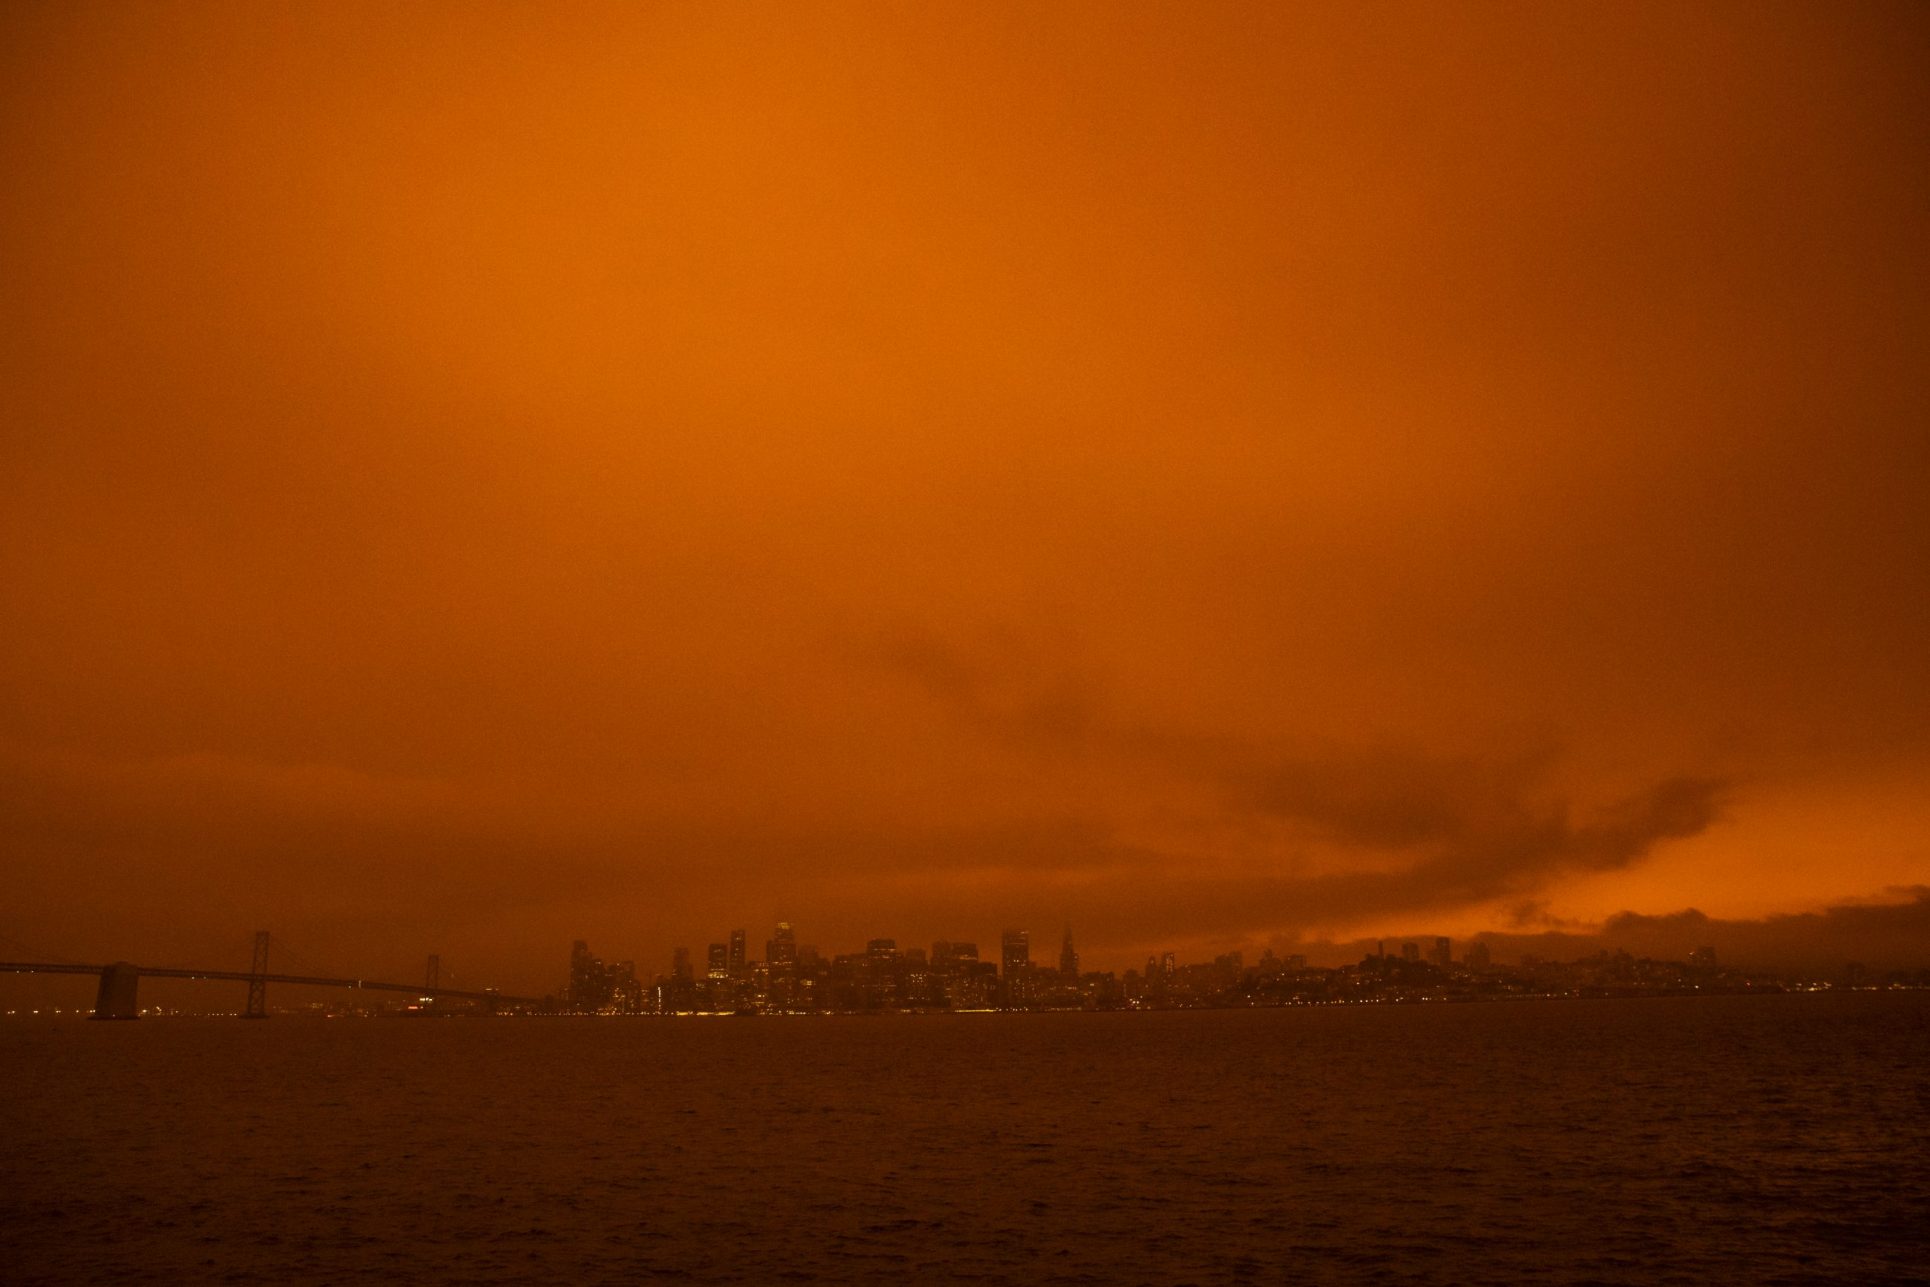 San Francisco cielo anaranjado